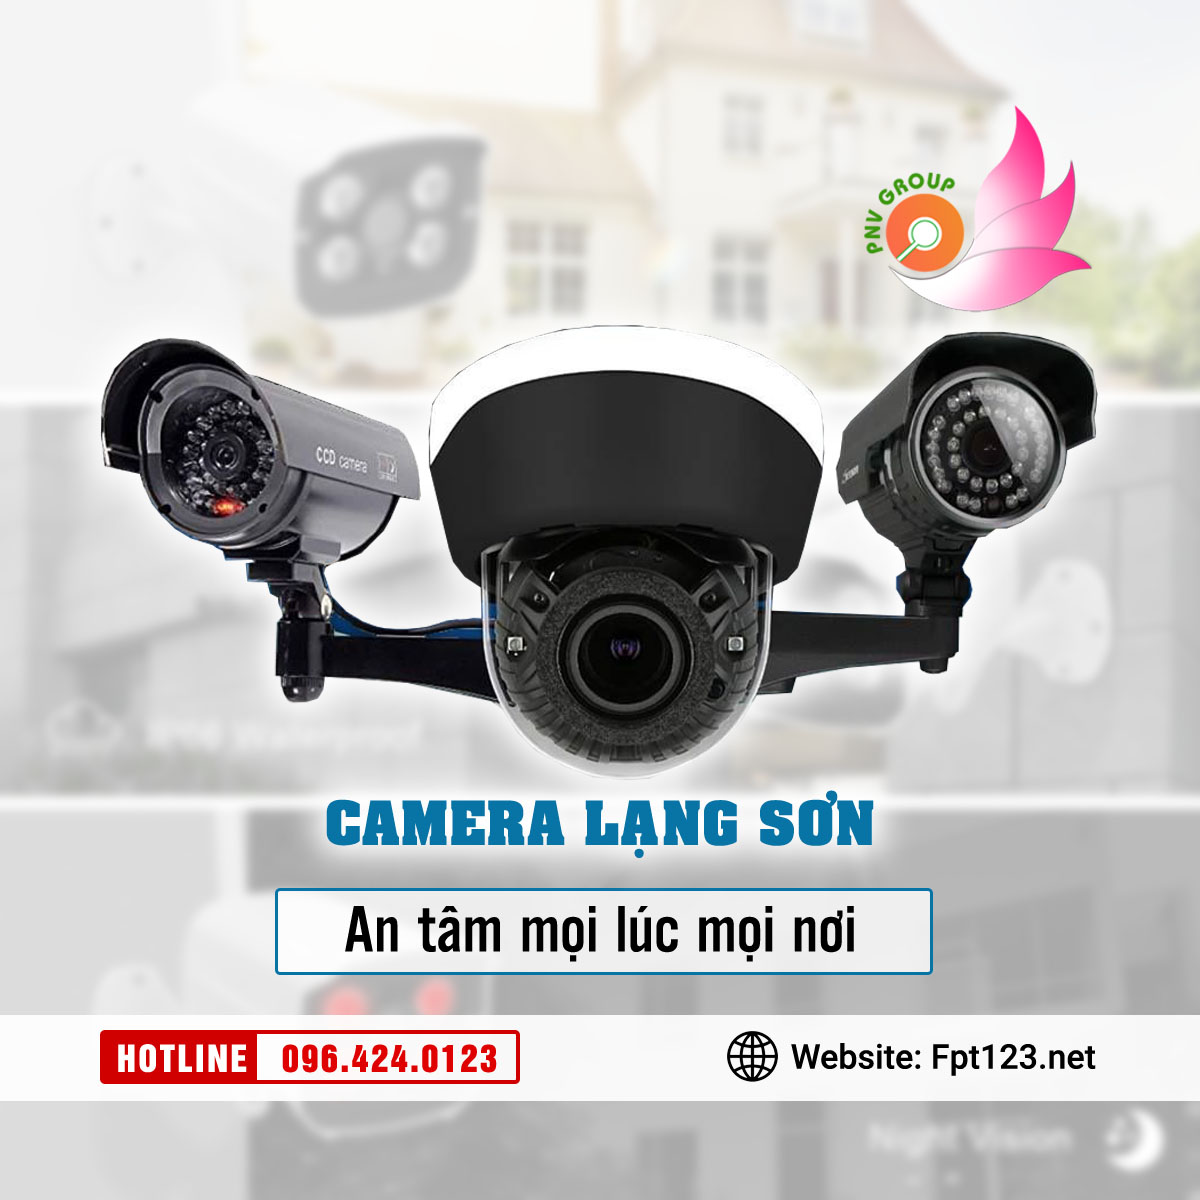 Lắp đặt camera chống trộm tại Hữu Lũng, Lạng Sơn